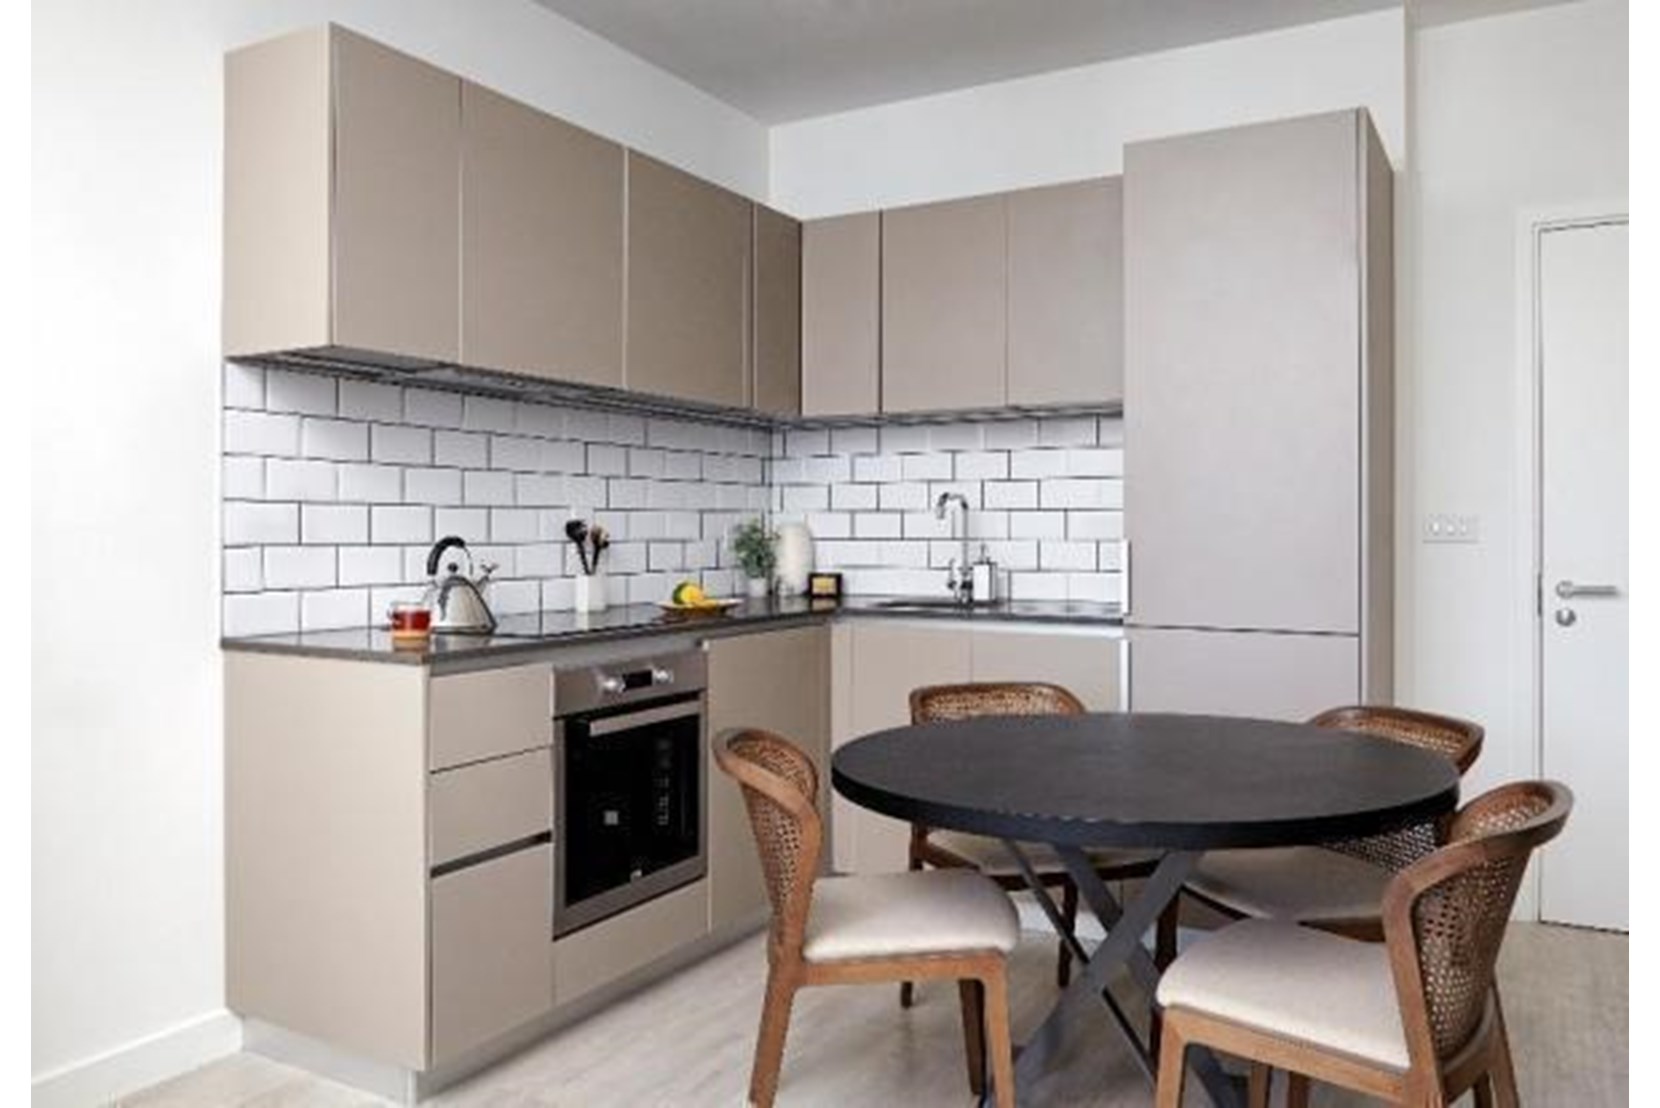 Apartments to Rent by Platform_ at Platform_Stevenage, Stevenage, SG1, kitchen dining area